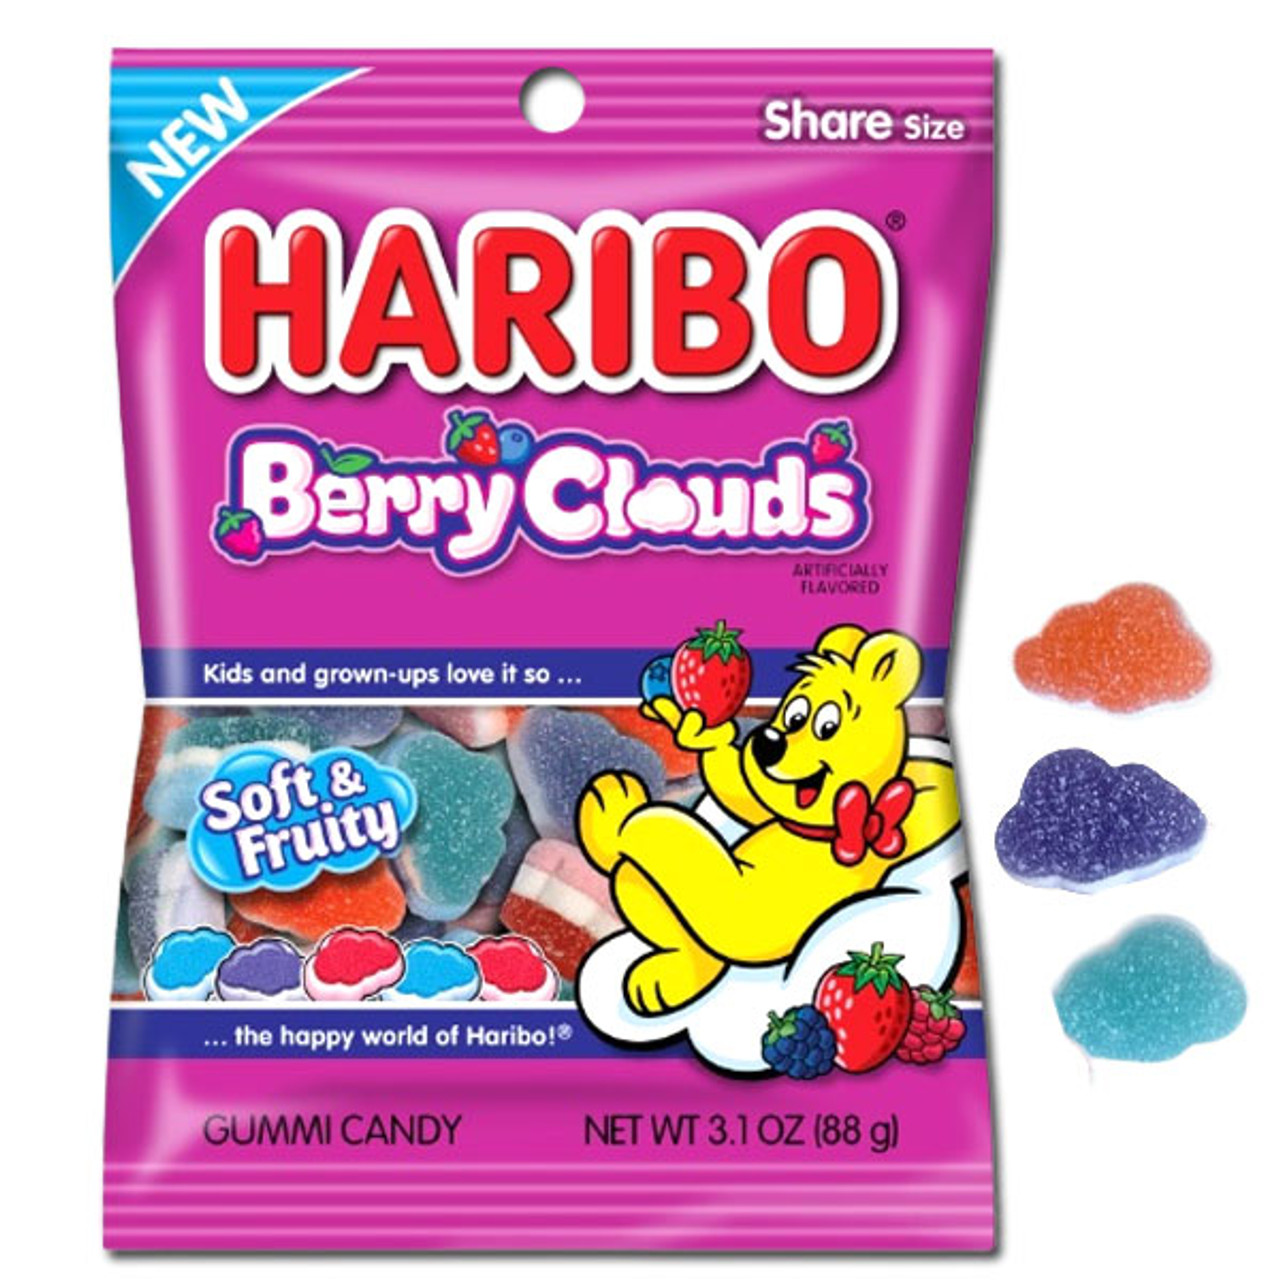 HARIBO Gummi Candy, Berries, 5 lb. Bag